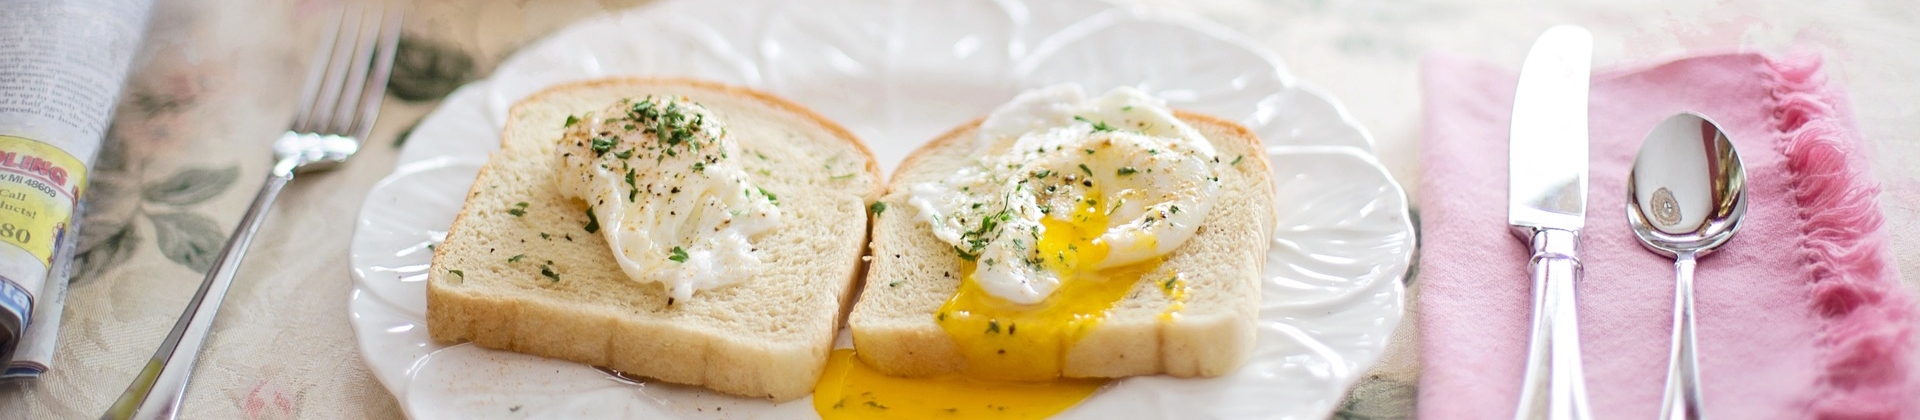 servicos-e-lazer_Cafe_da_manha_poached-eggs-on-toast-739401_1920